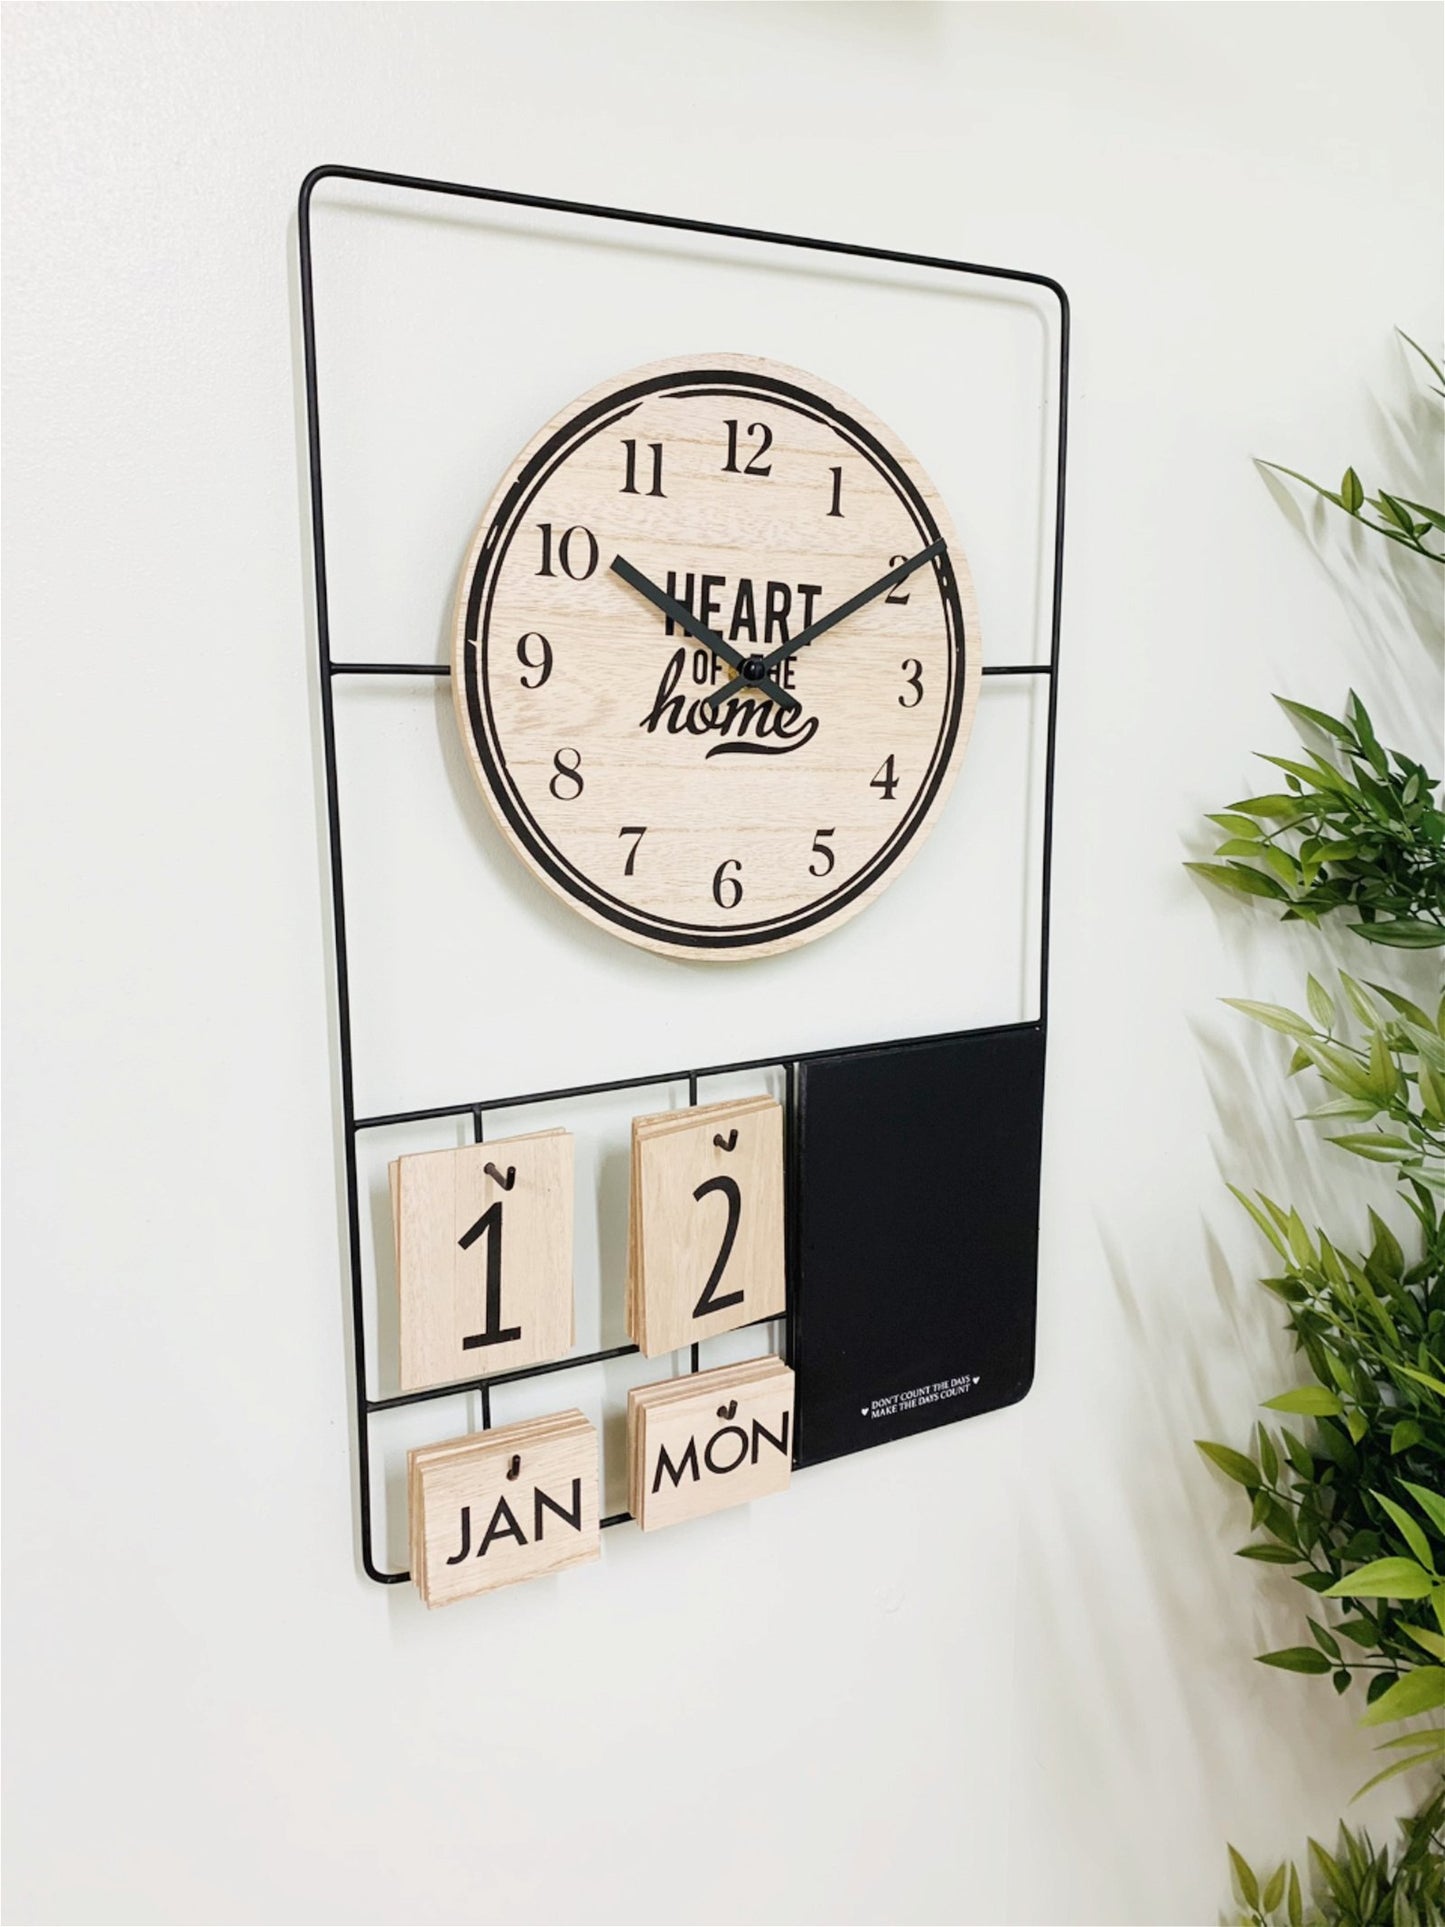 Metal & Wood Clock, Date & Memo Board 52x33cm